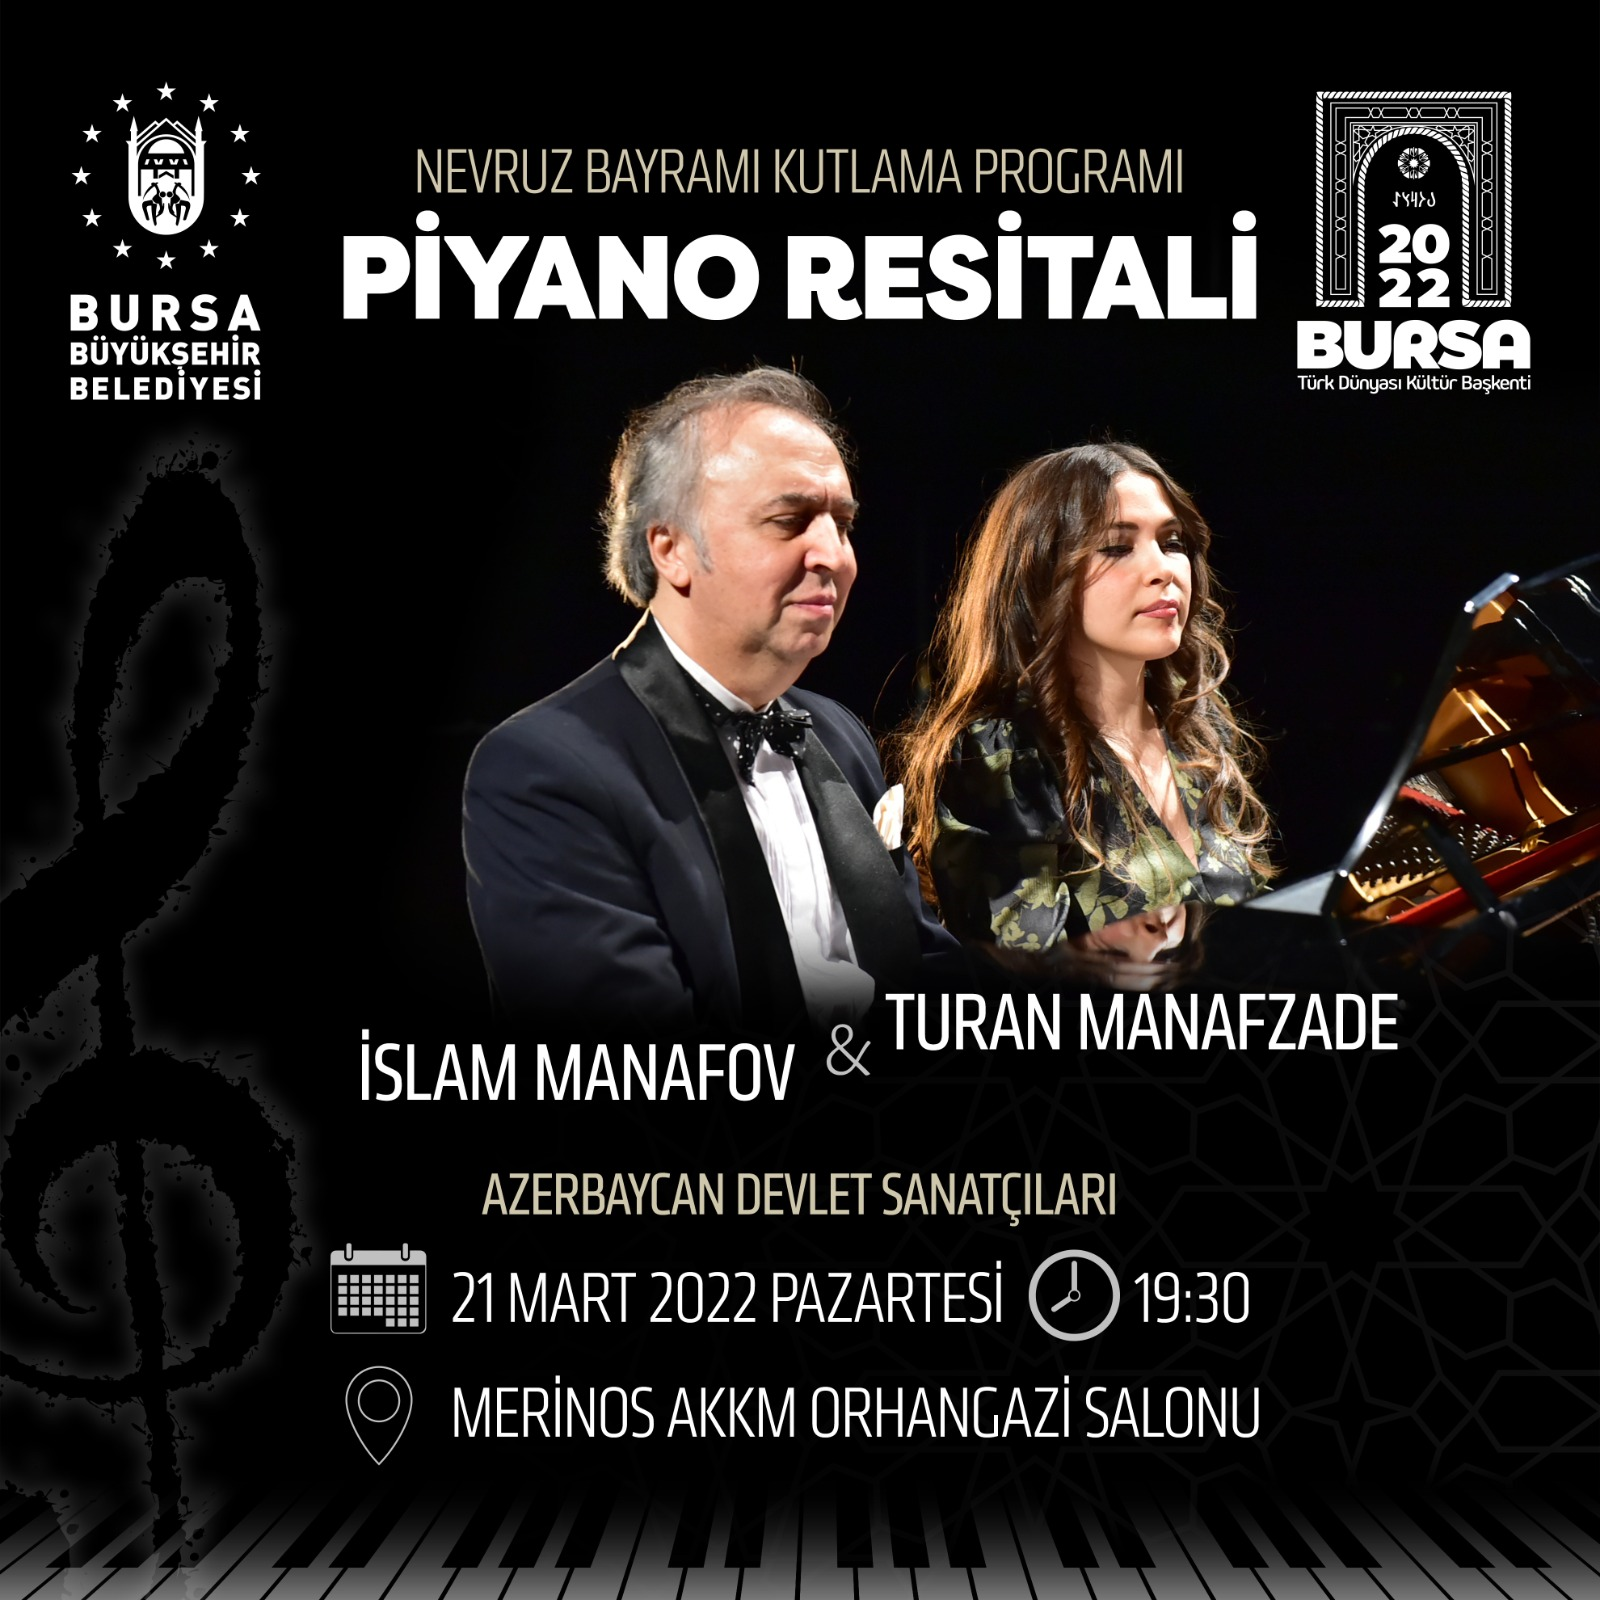 Bursa Nevruz Bayramı Kutlama Programı Piyano Resitali